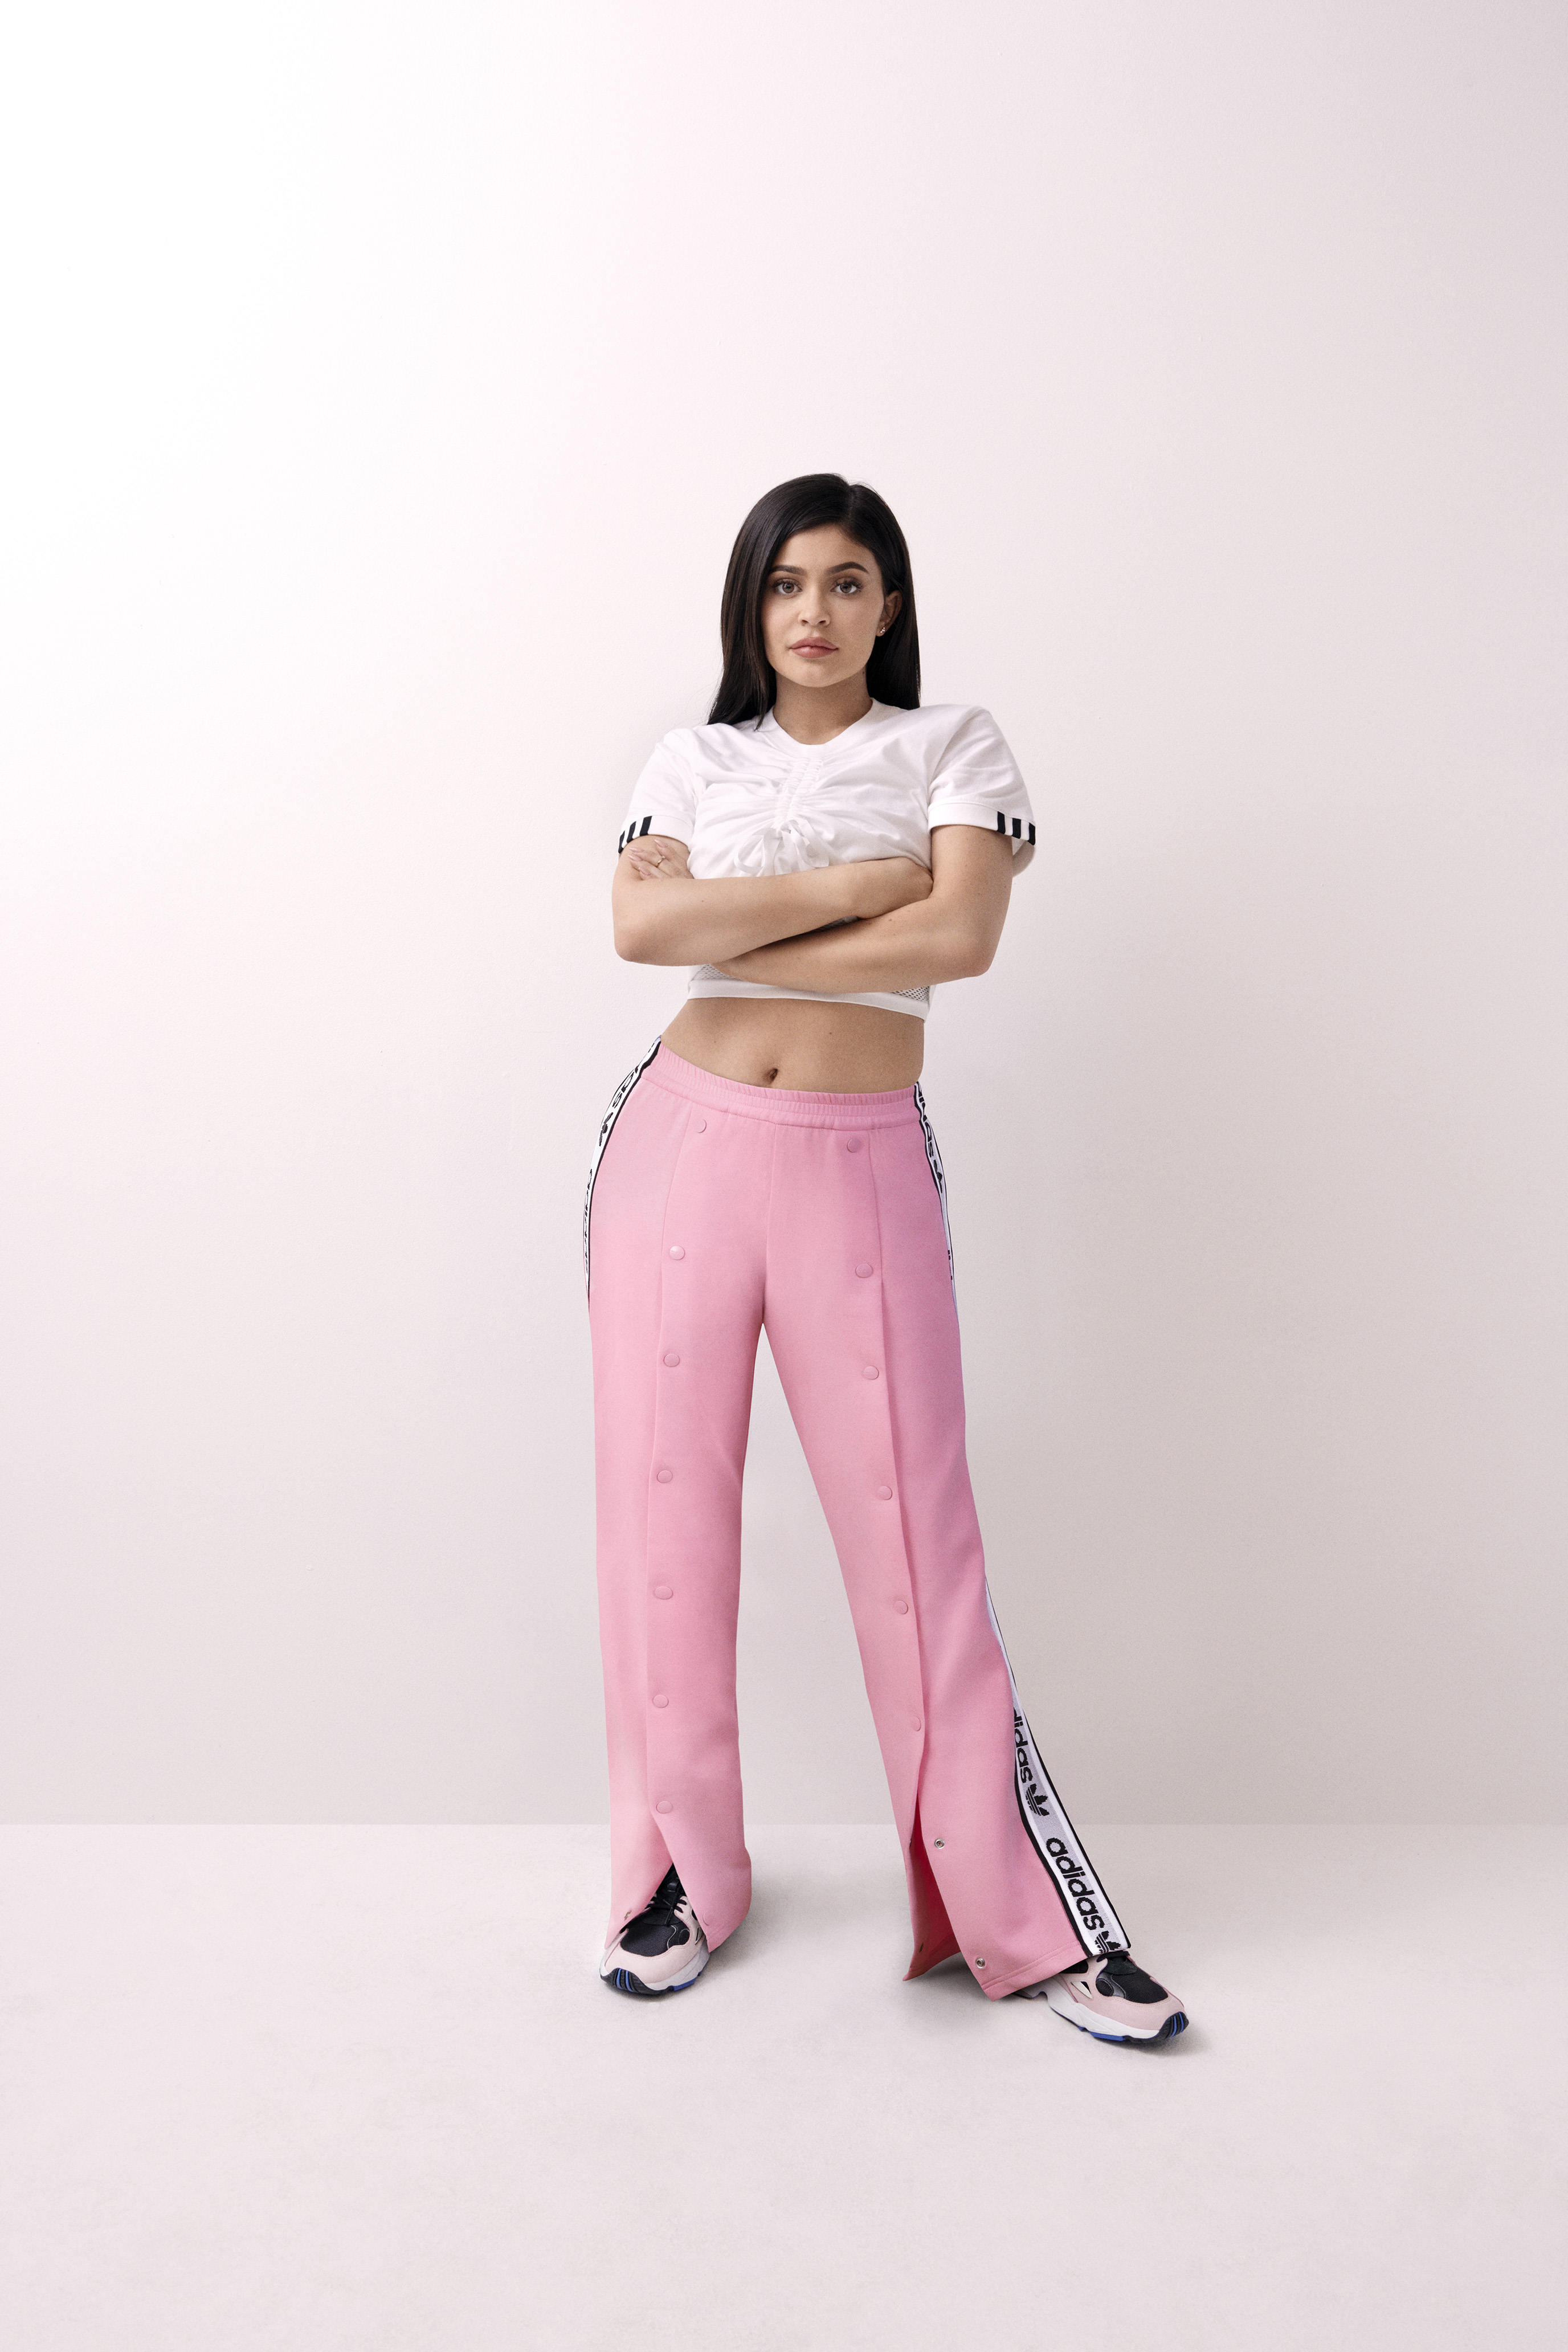 Mierda Melancólico lona Kylie Jenner saca su lado más sexy en la nueva campaña para Adidas | Grazia